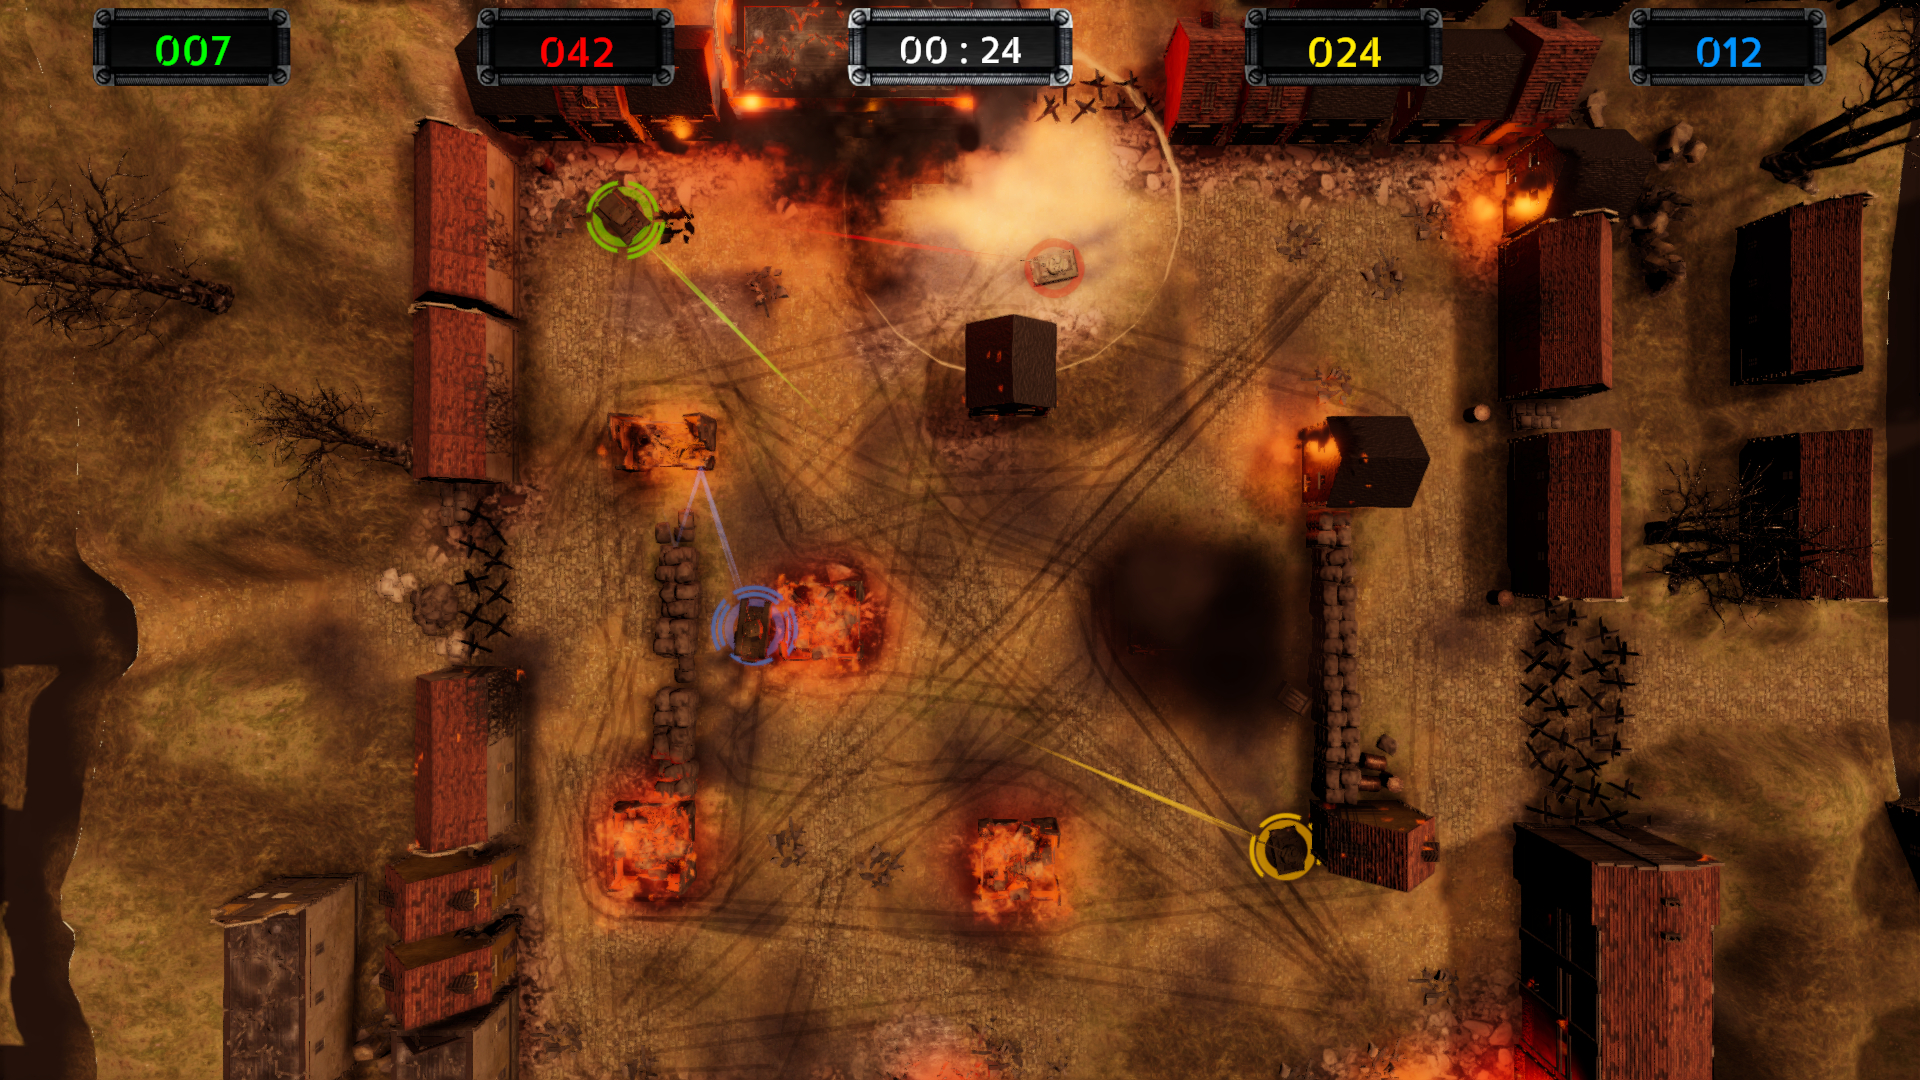 Скриншот матча Armor of Heroes, показывающий столкновение четырех танков